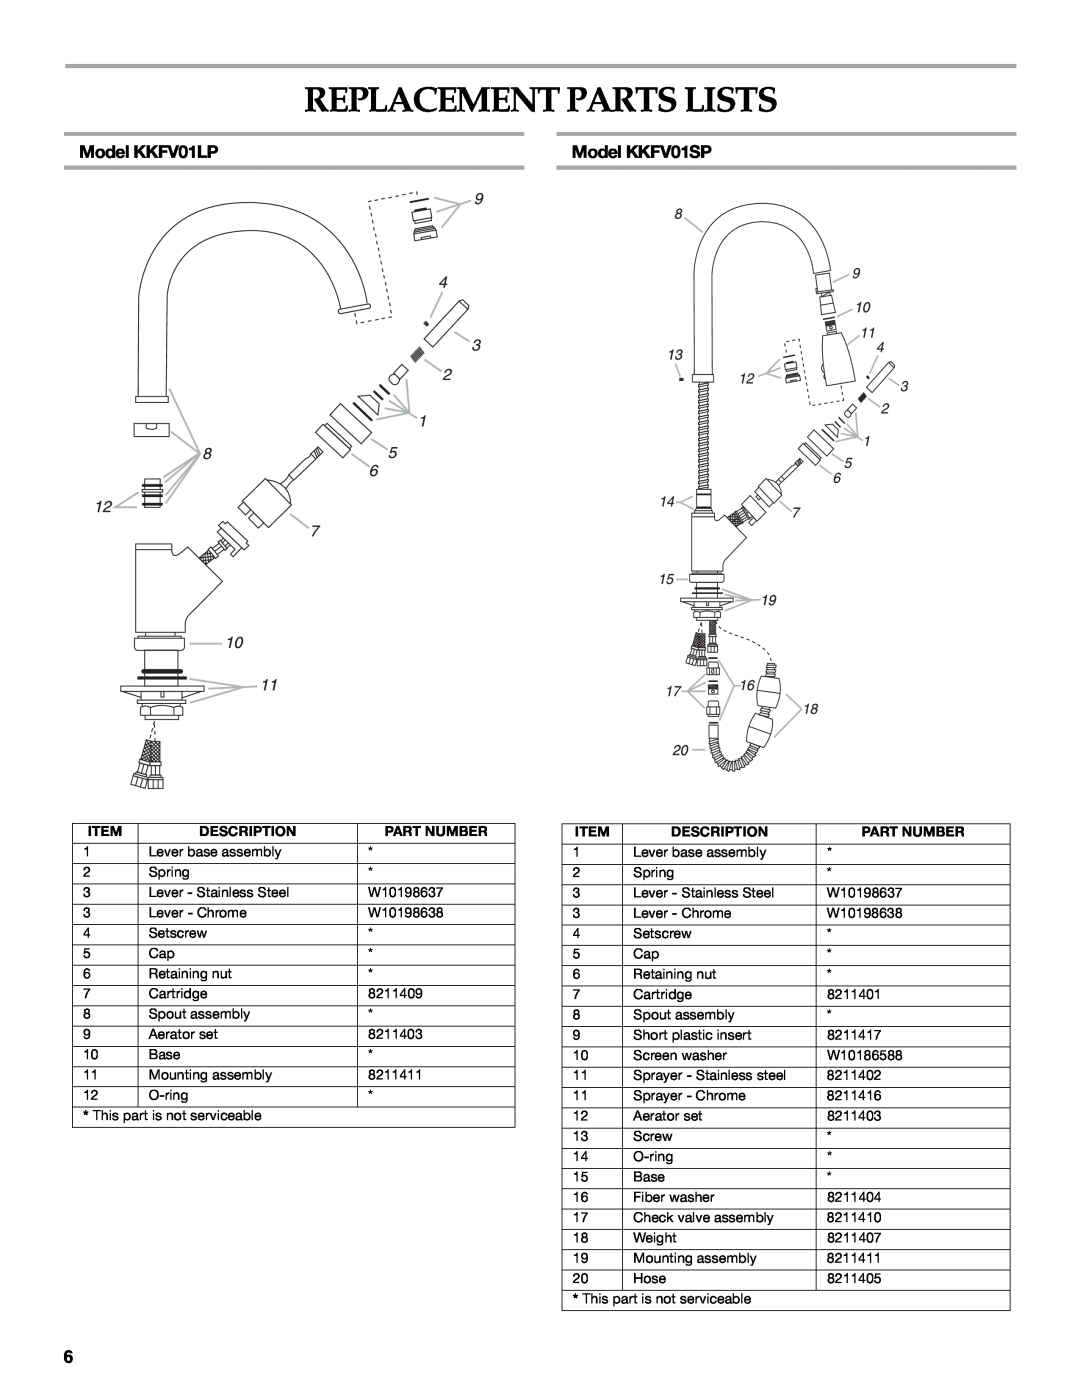 KitchenAid KKFV01SP Series Replacement Parts Lists, Model KKFV01LP, Model KKFV01SP, 6 12 7 10, Description, Part Number 